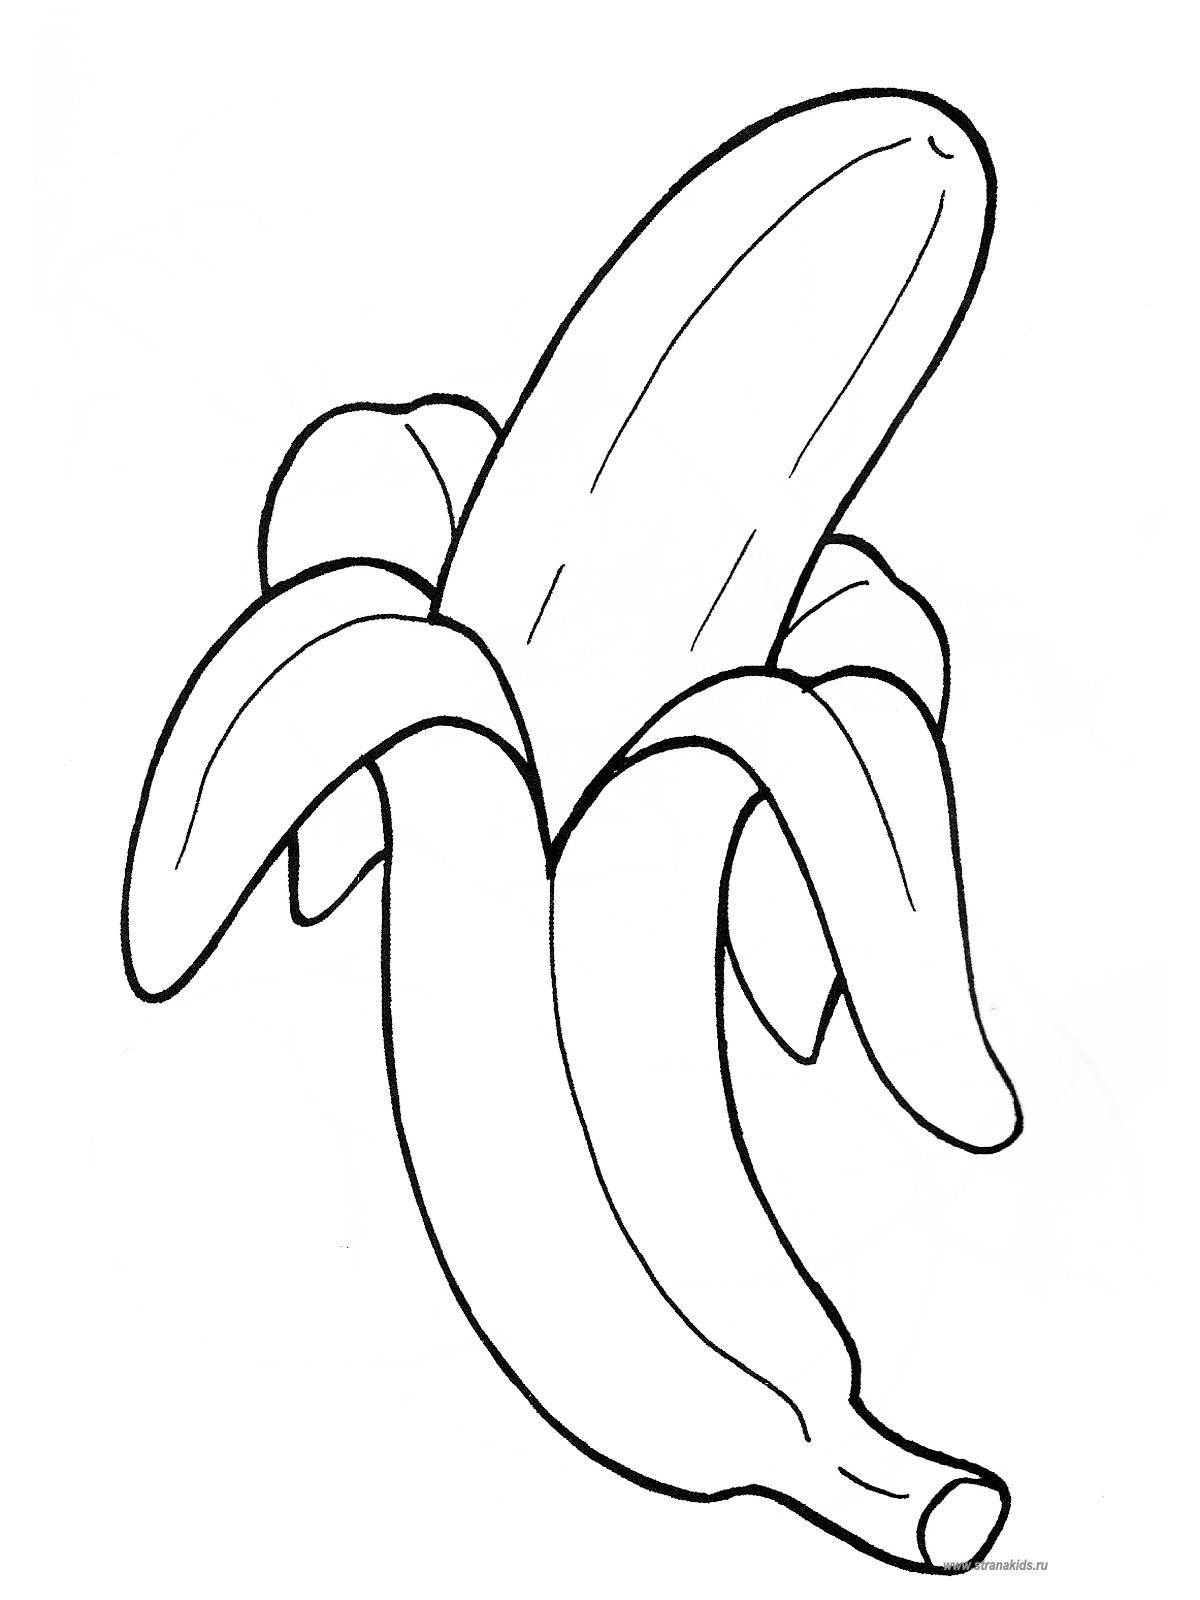 Coloring Outdoor banana. Category fruits. Tags:  banana.